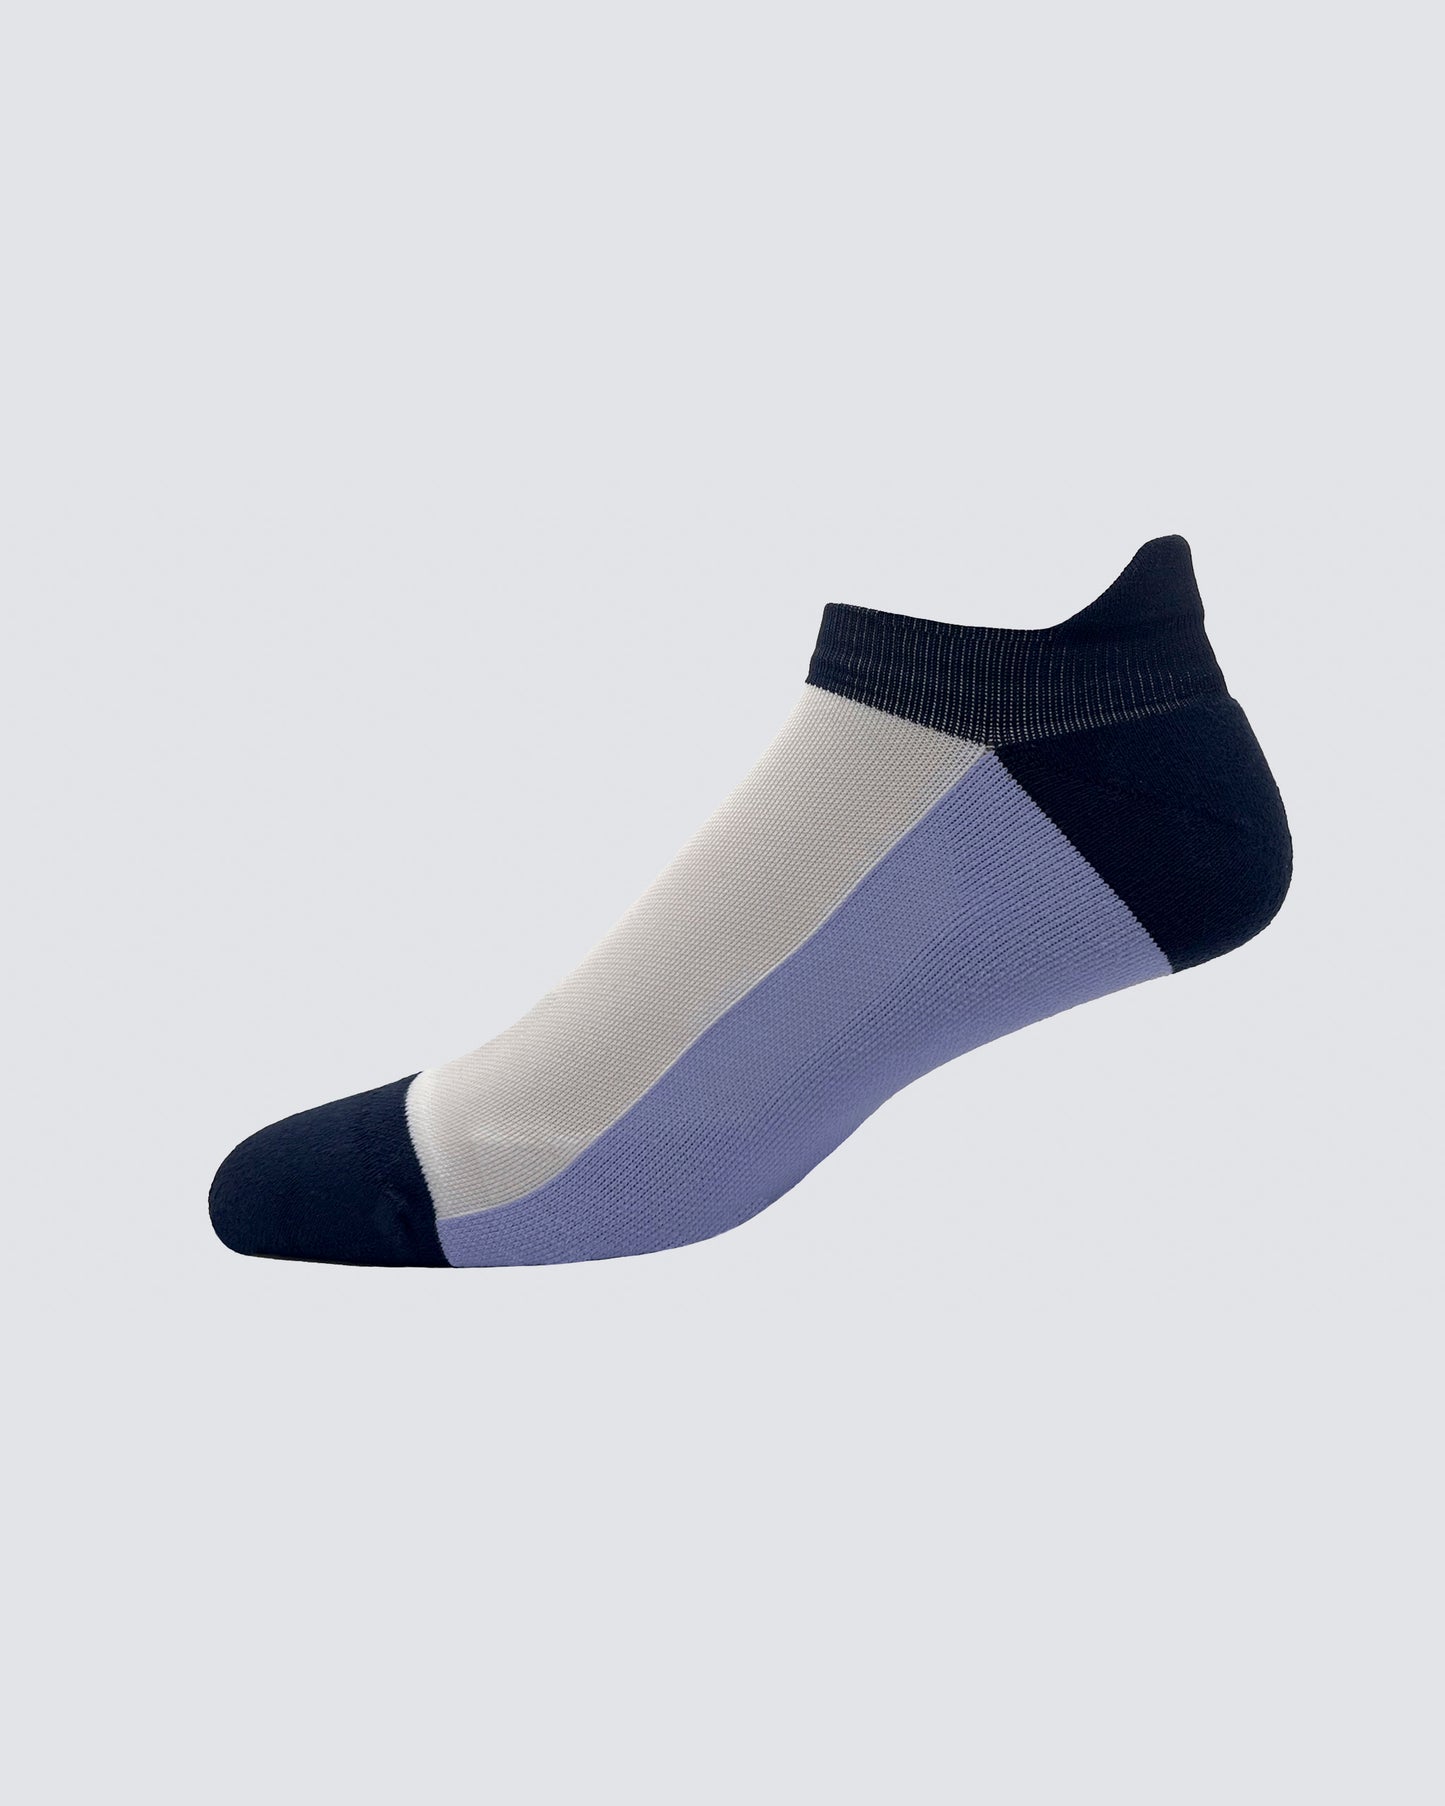 Everett Socks in White/Lavender